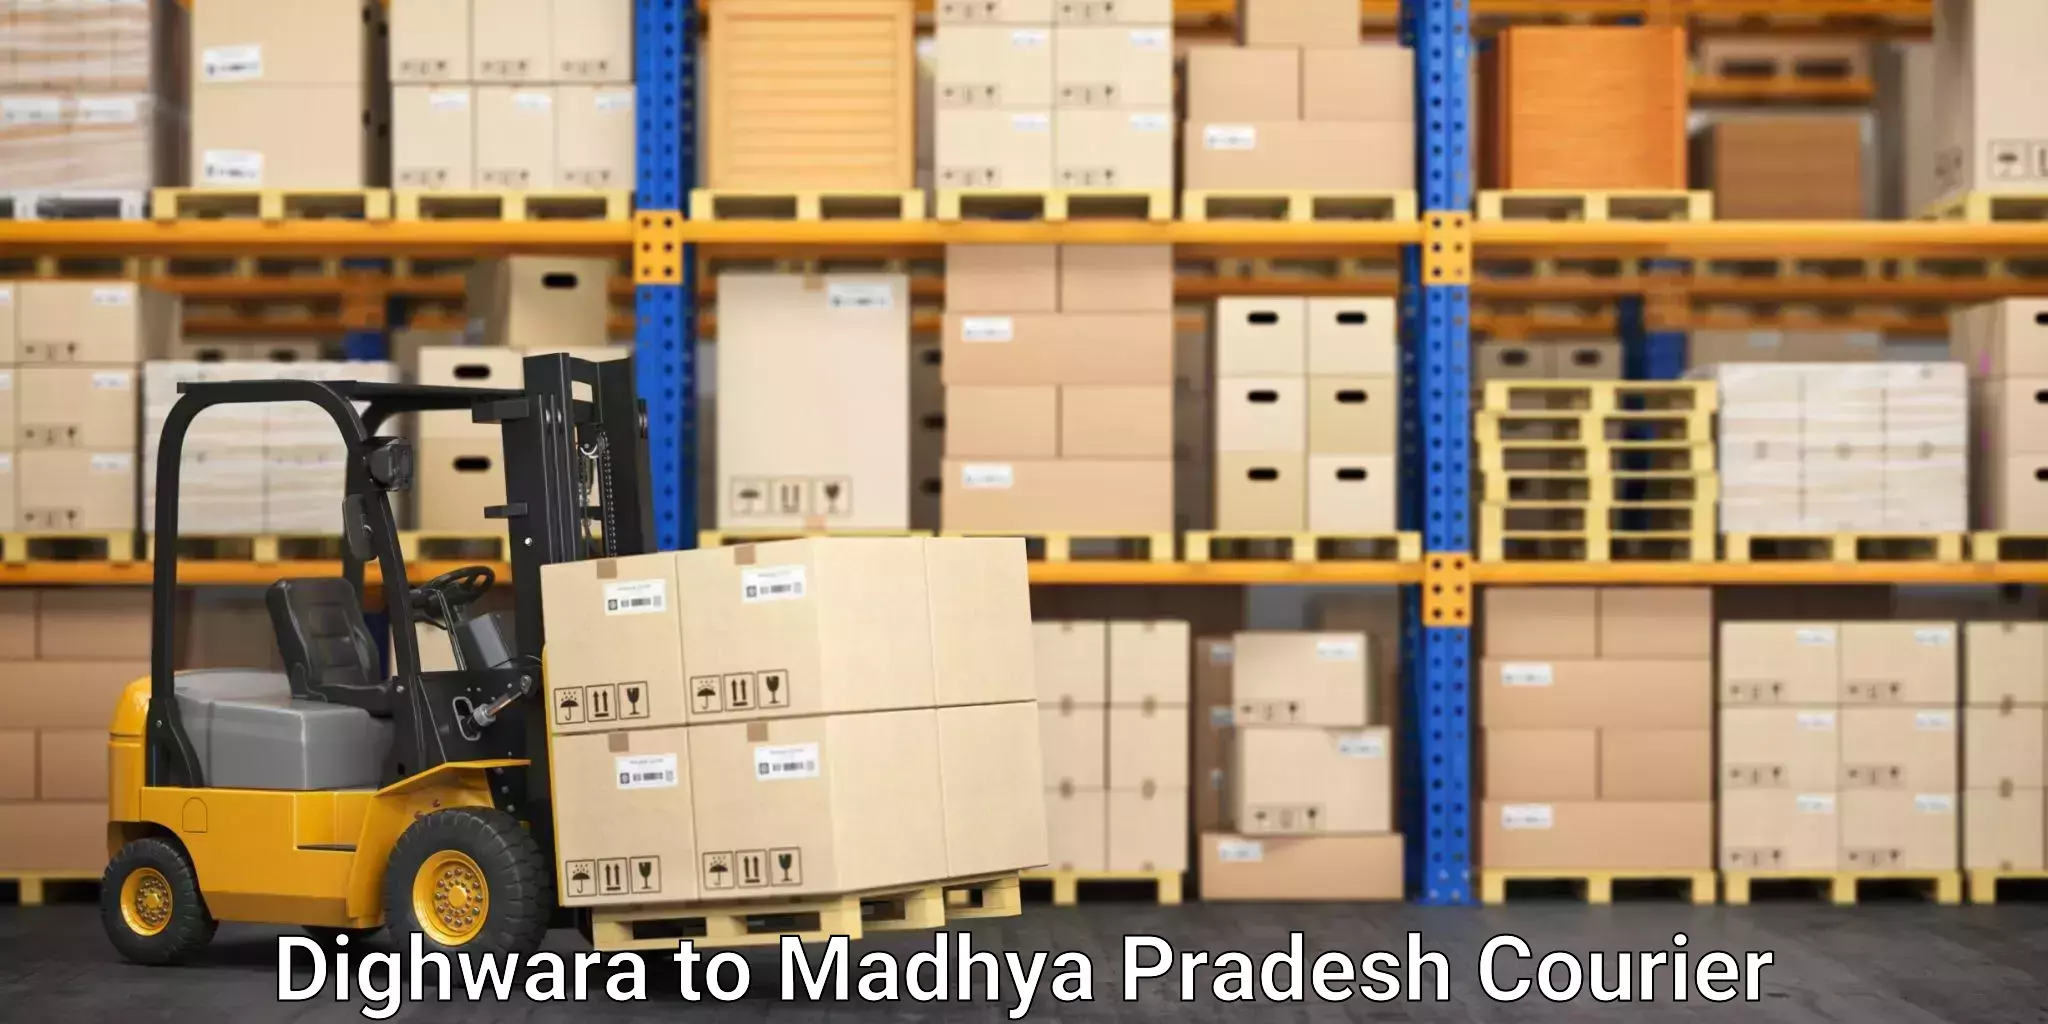 Furniture transport experts Dighwara to Madhya Pradesh